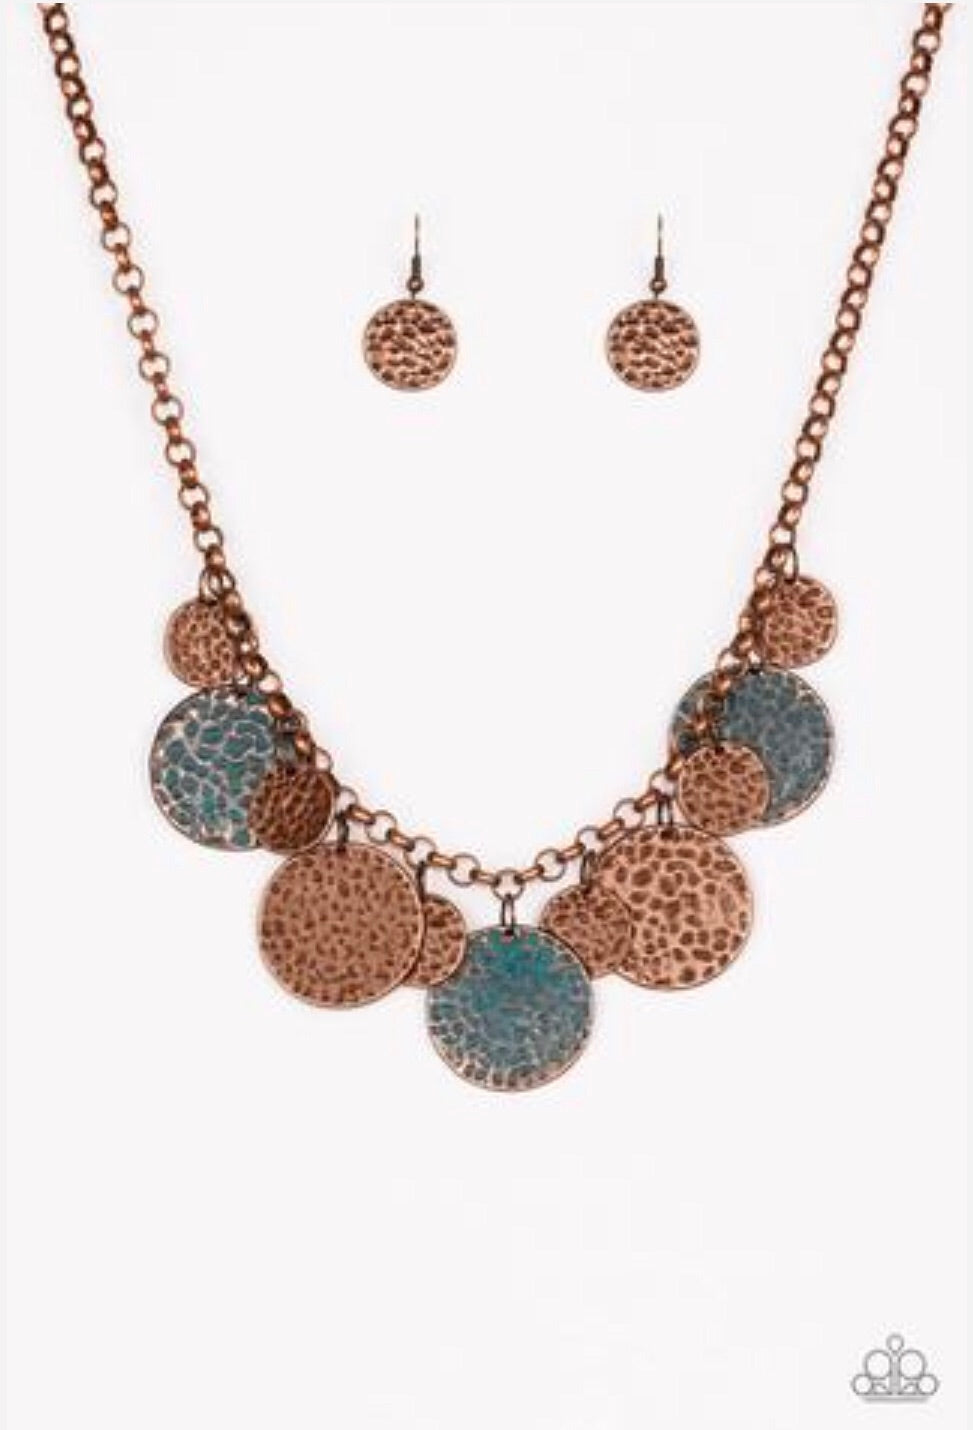 Treasure HUNTRESS Copper-Necklace